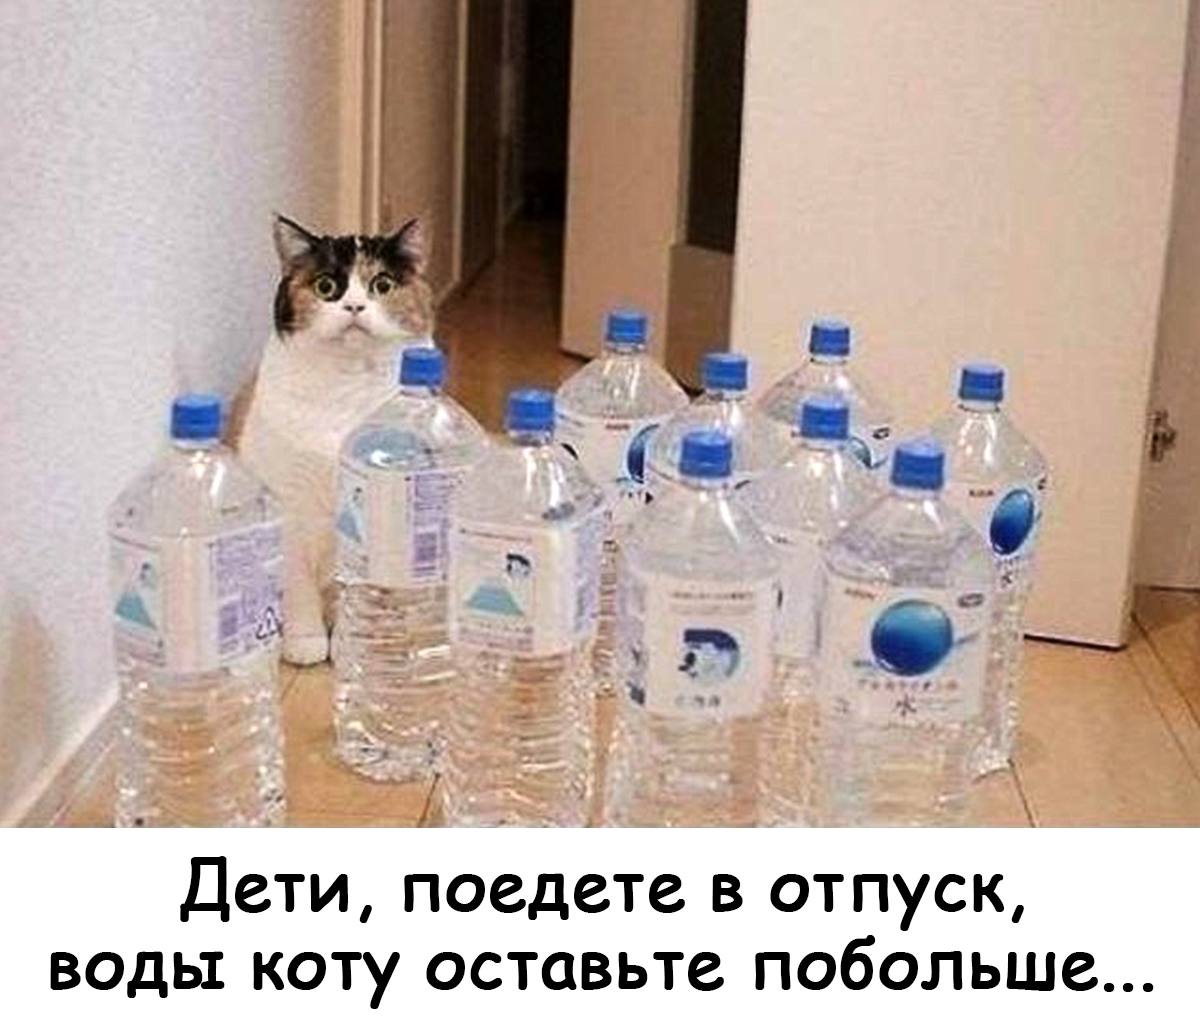 Ебобо. Оставь коту побольше воды. Будешь уезжать оставь коту воды. Оставь коту воды прикол. Сынок оставь коту воды.